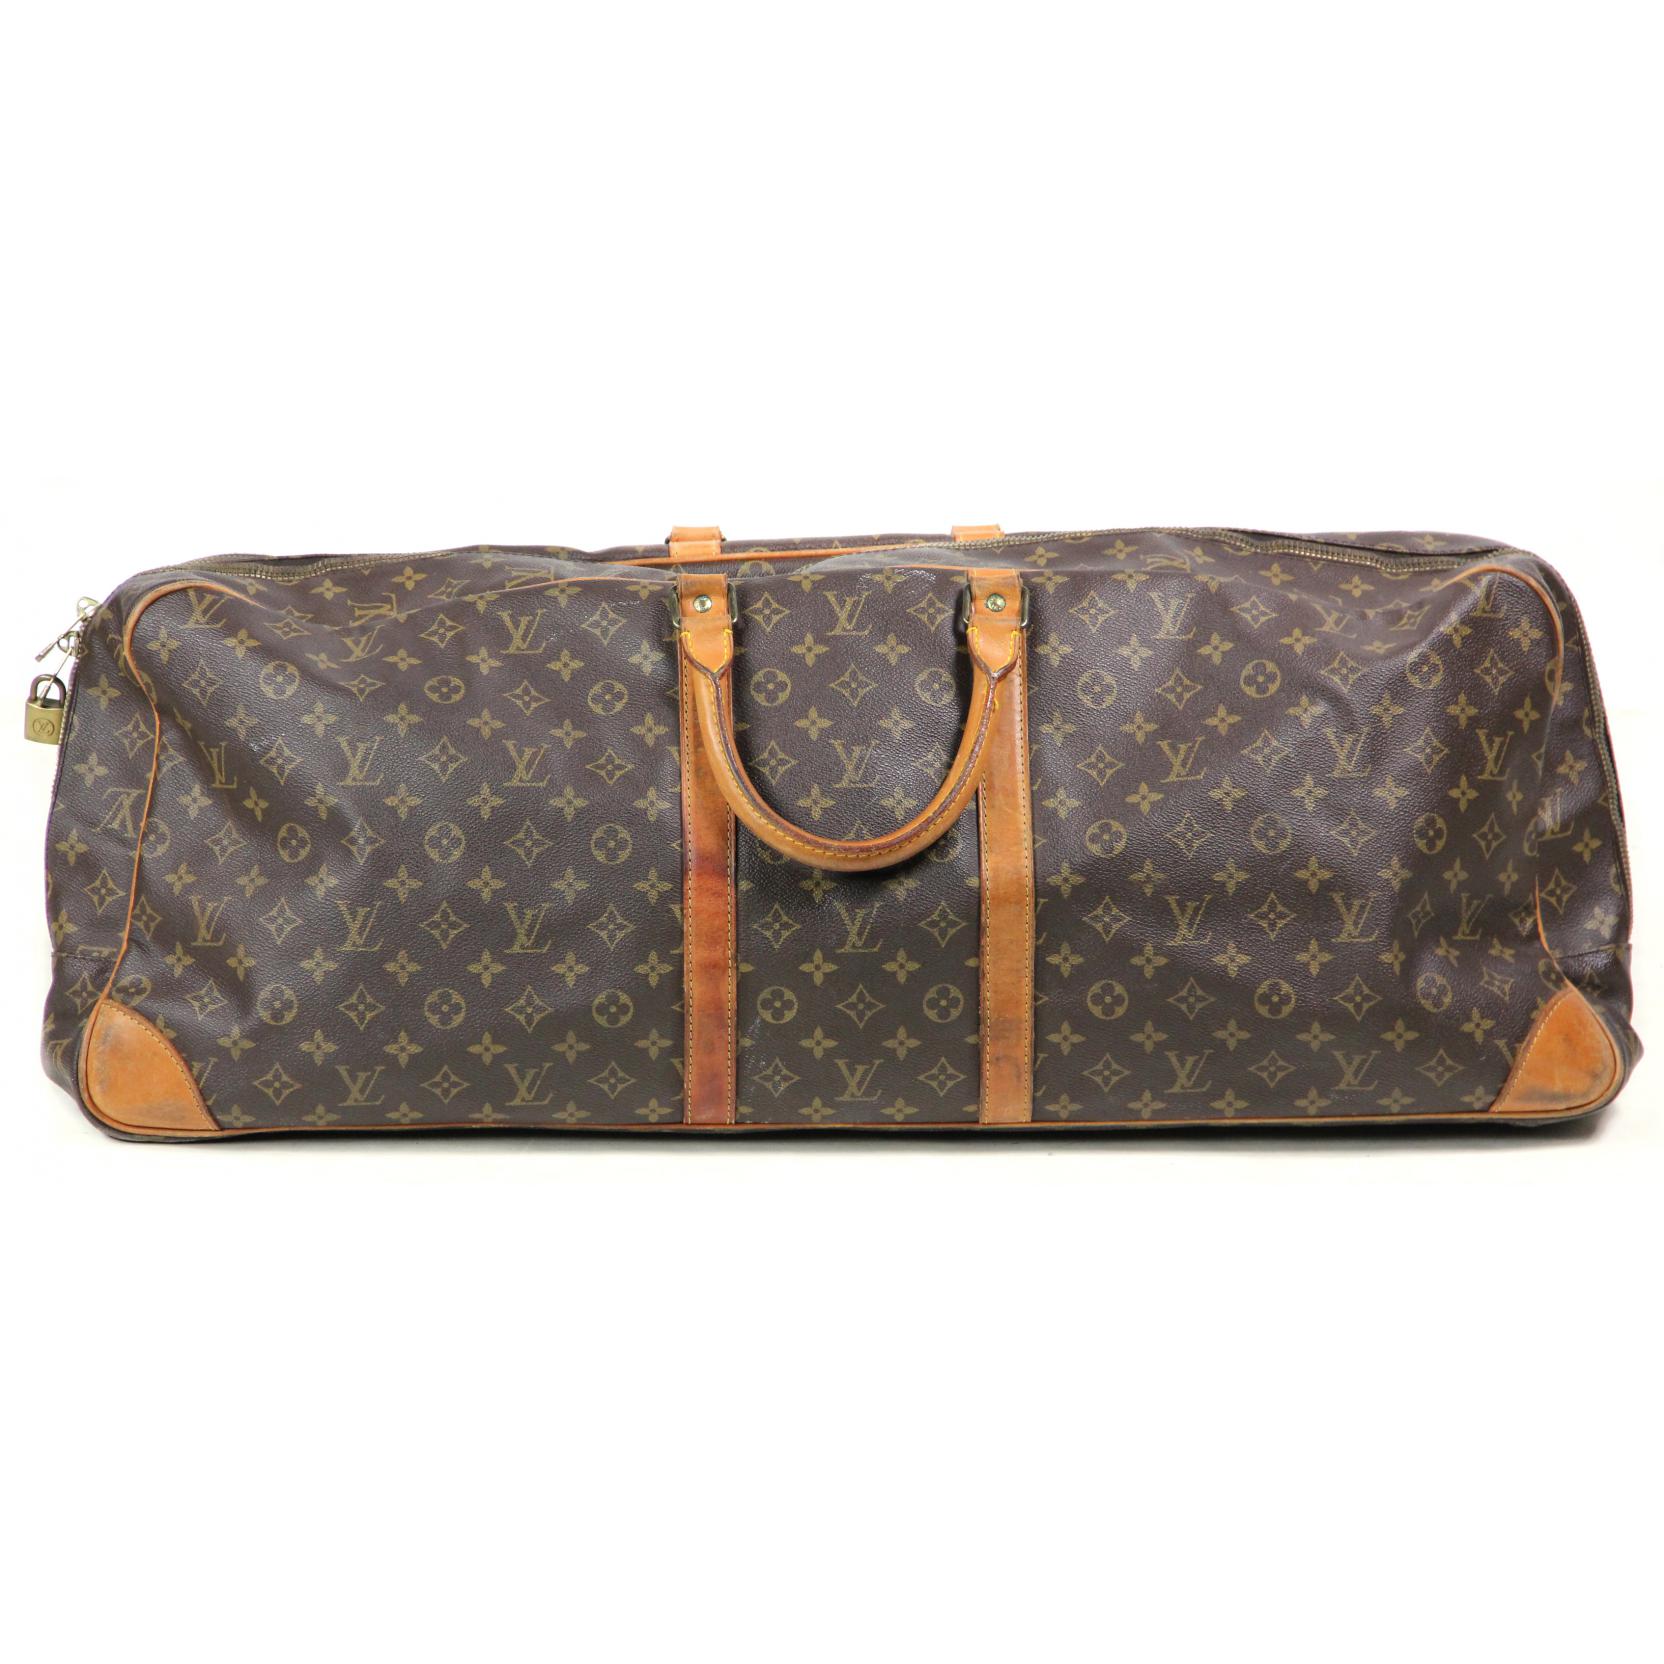 Rare Vintage Tennis Bag, Louis Vuitton (Lot 881 - The Winter Catalogue  AuctionDec 6, 2013, 10:00am)